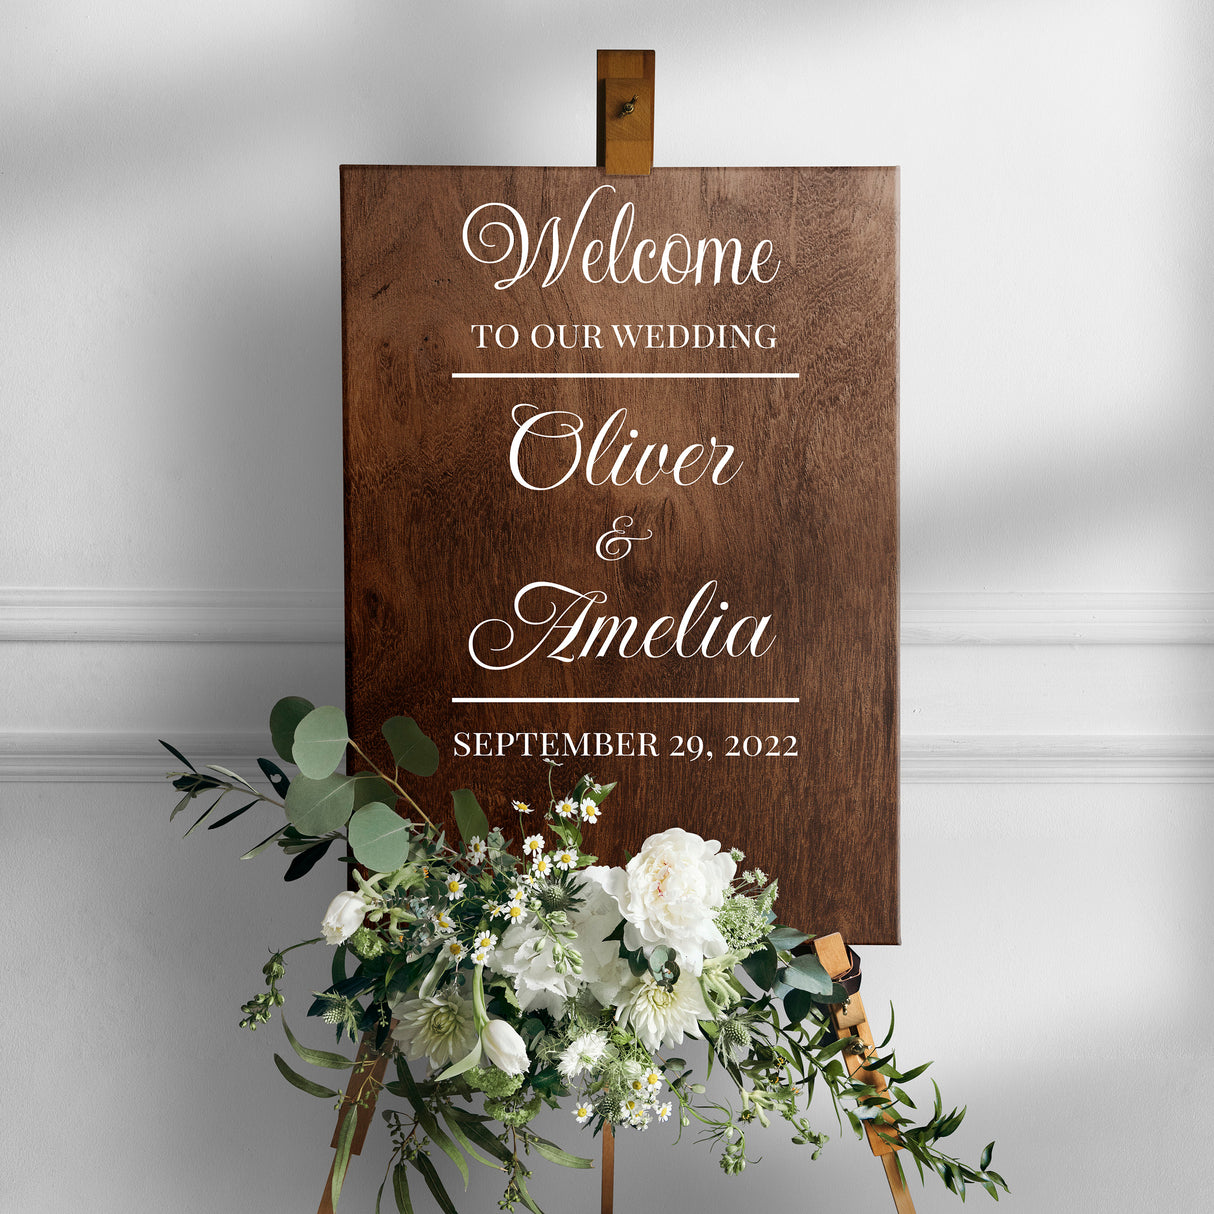 Tere tulemast meie pulmasildi kleebisele – kohandatud nimega vinüülkleebis peegelpulmatseremooniale